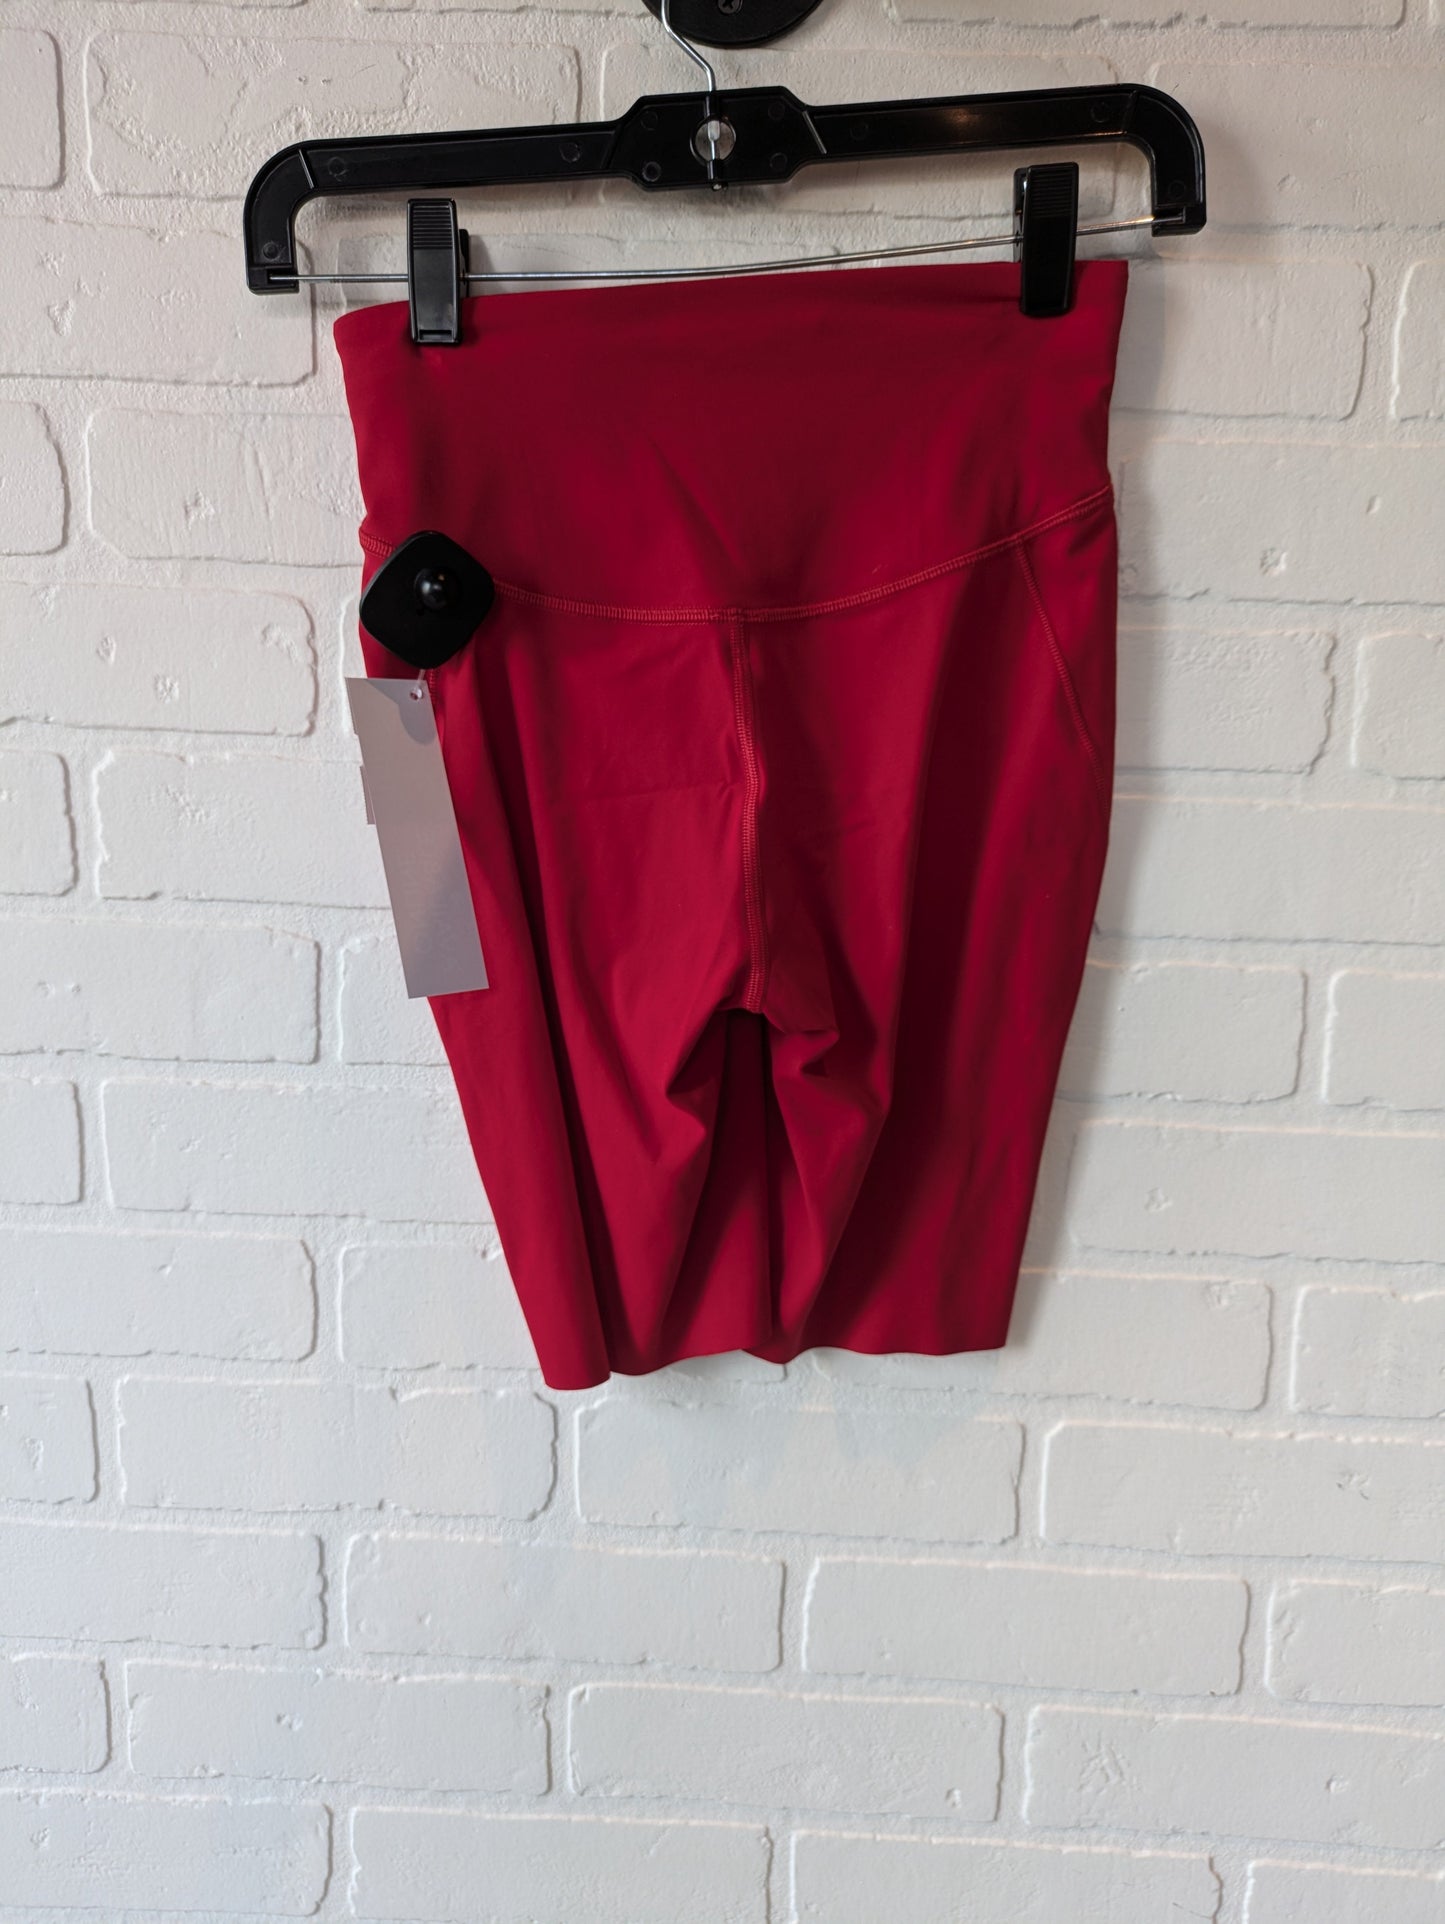 Red Athletic Shorts Lululemon, Size 4